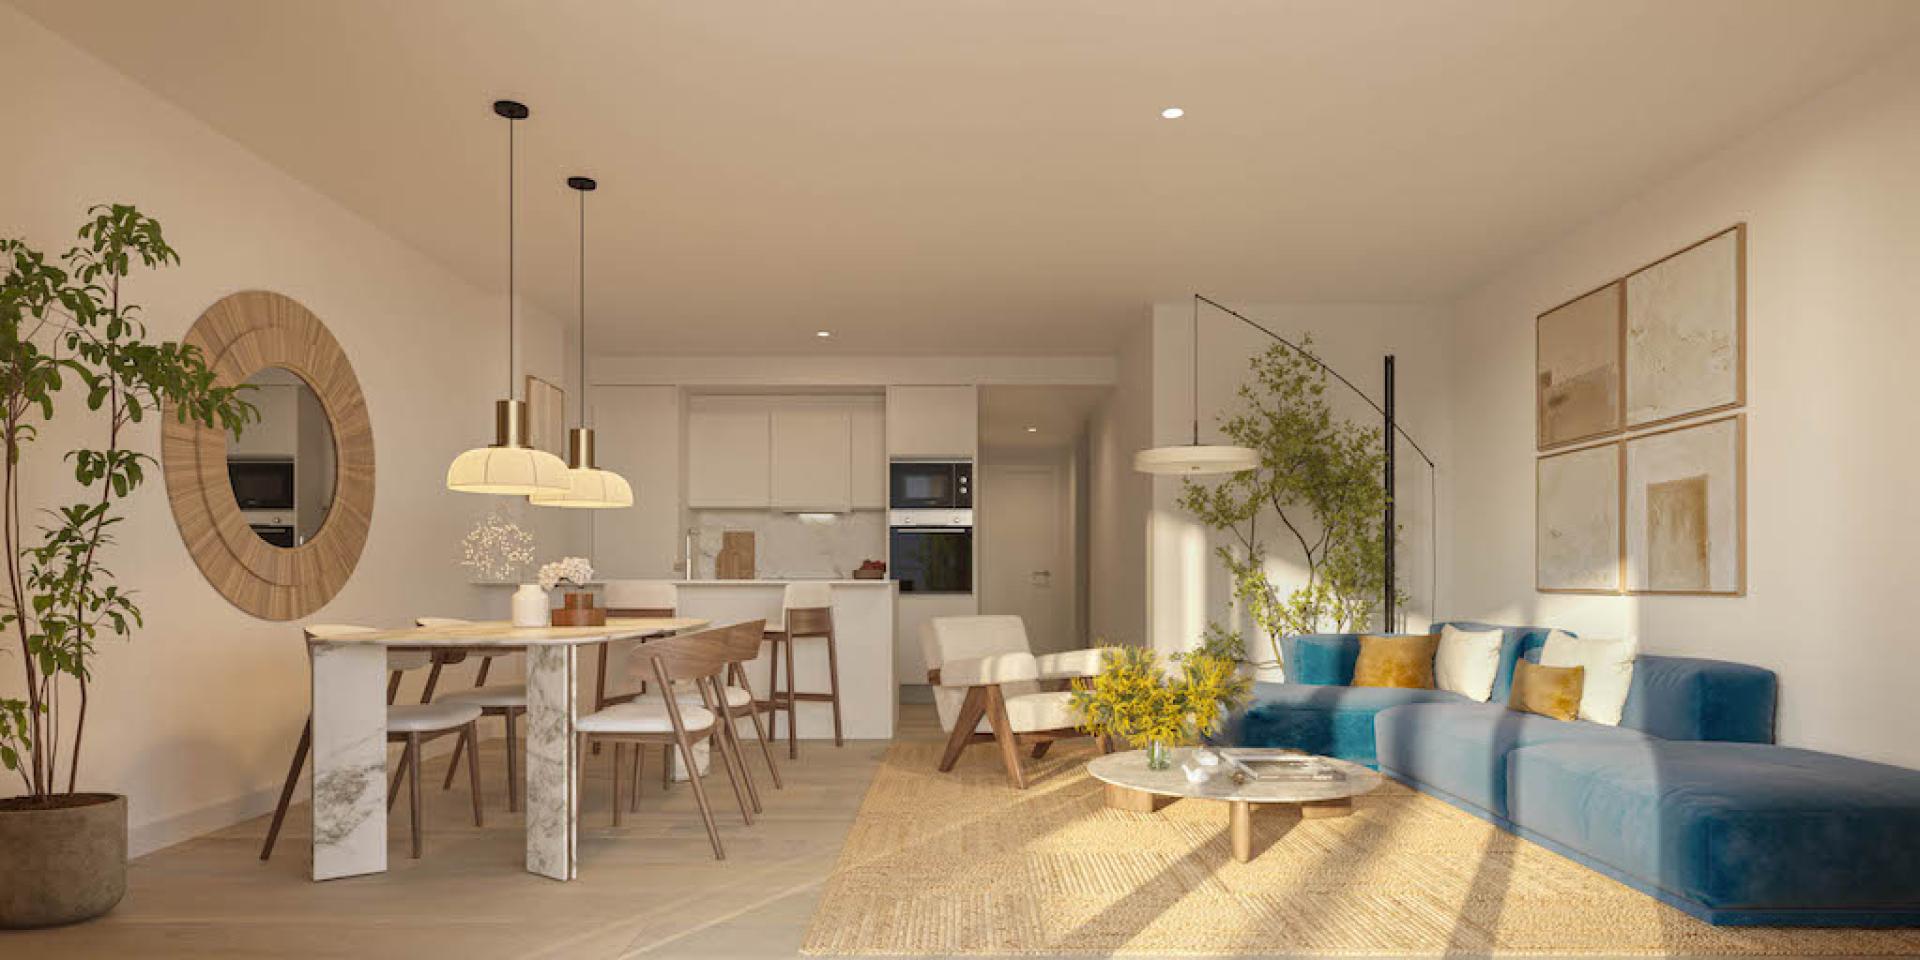 3 slaapkamer Appartement met dakterras in Denia - Nieuwbouw in Medvilla Spanje